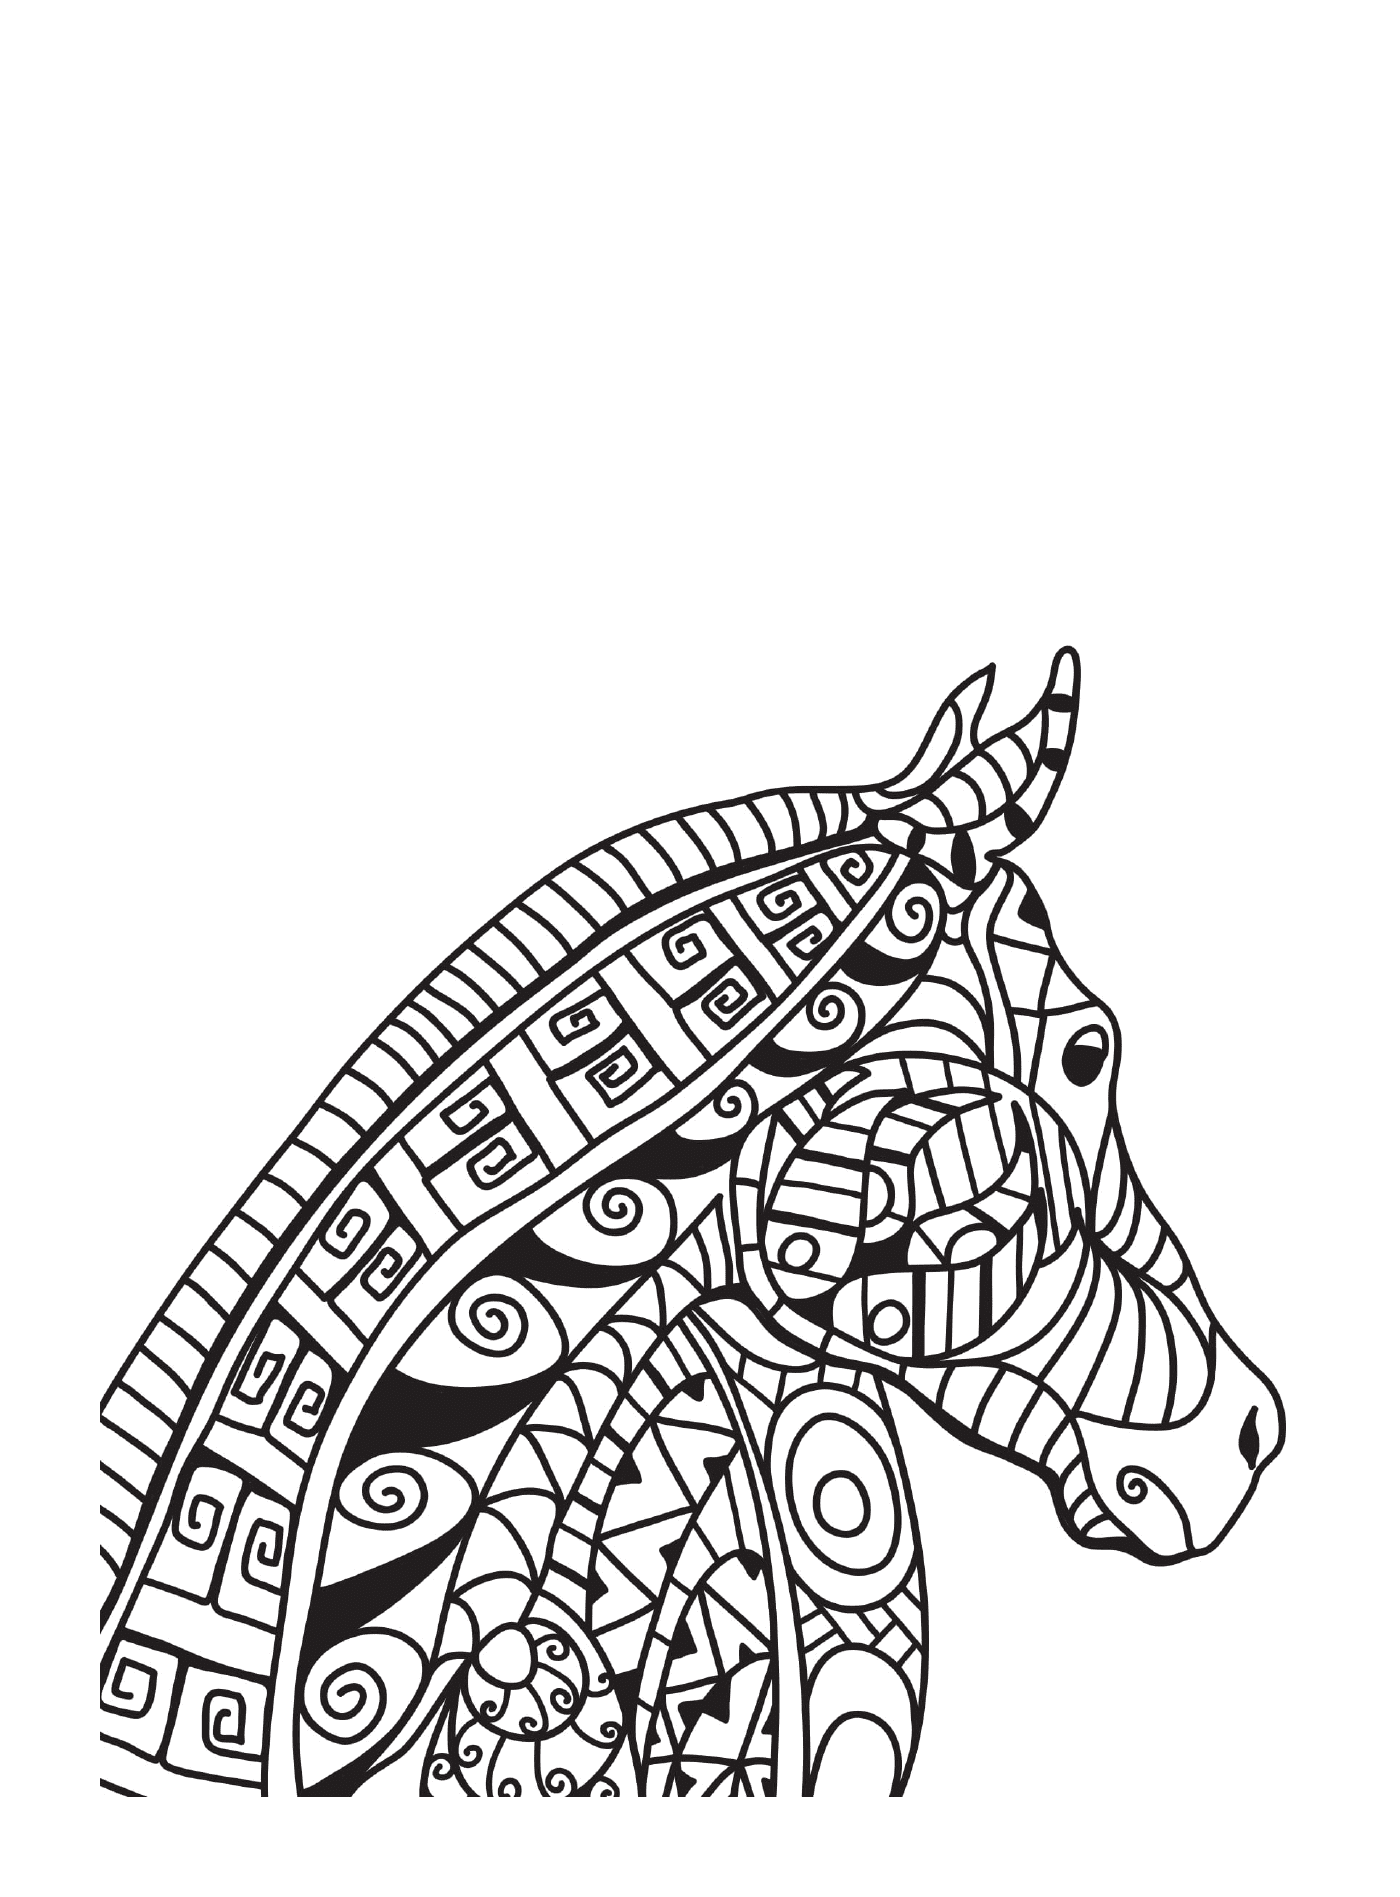  Un adulto di un cavallo in stile zentangle 